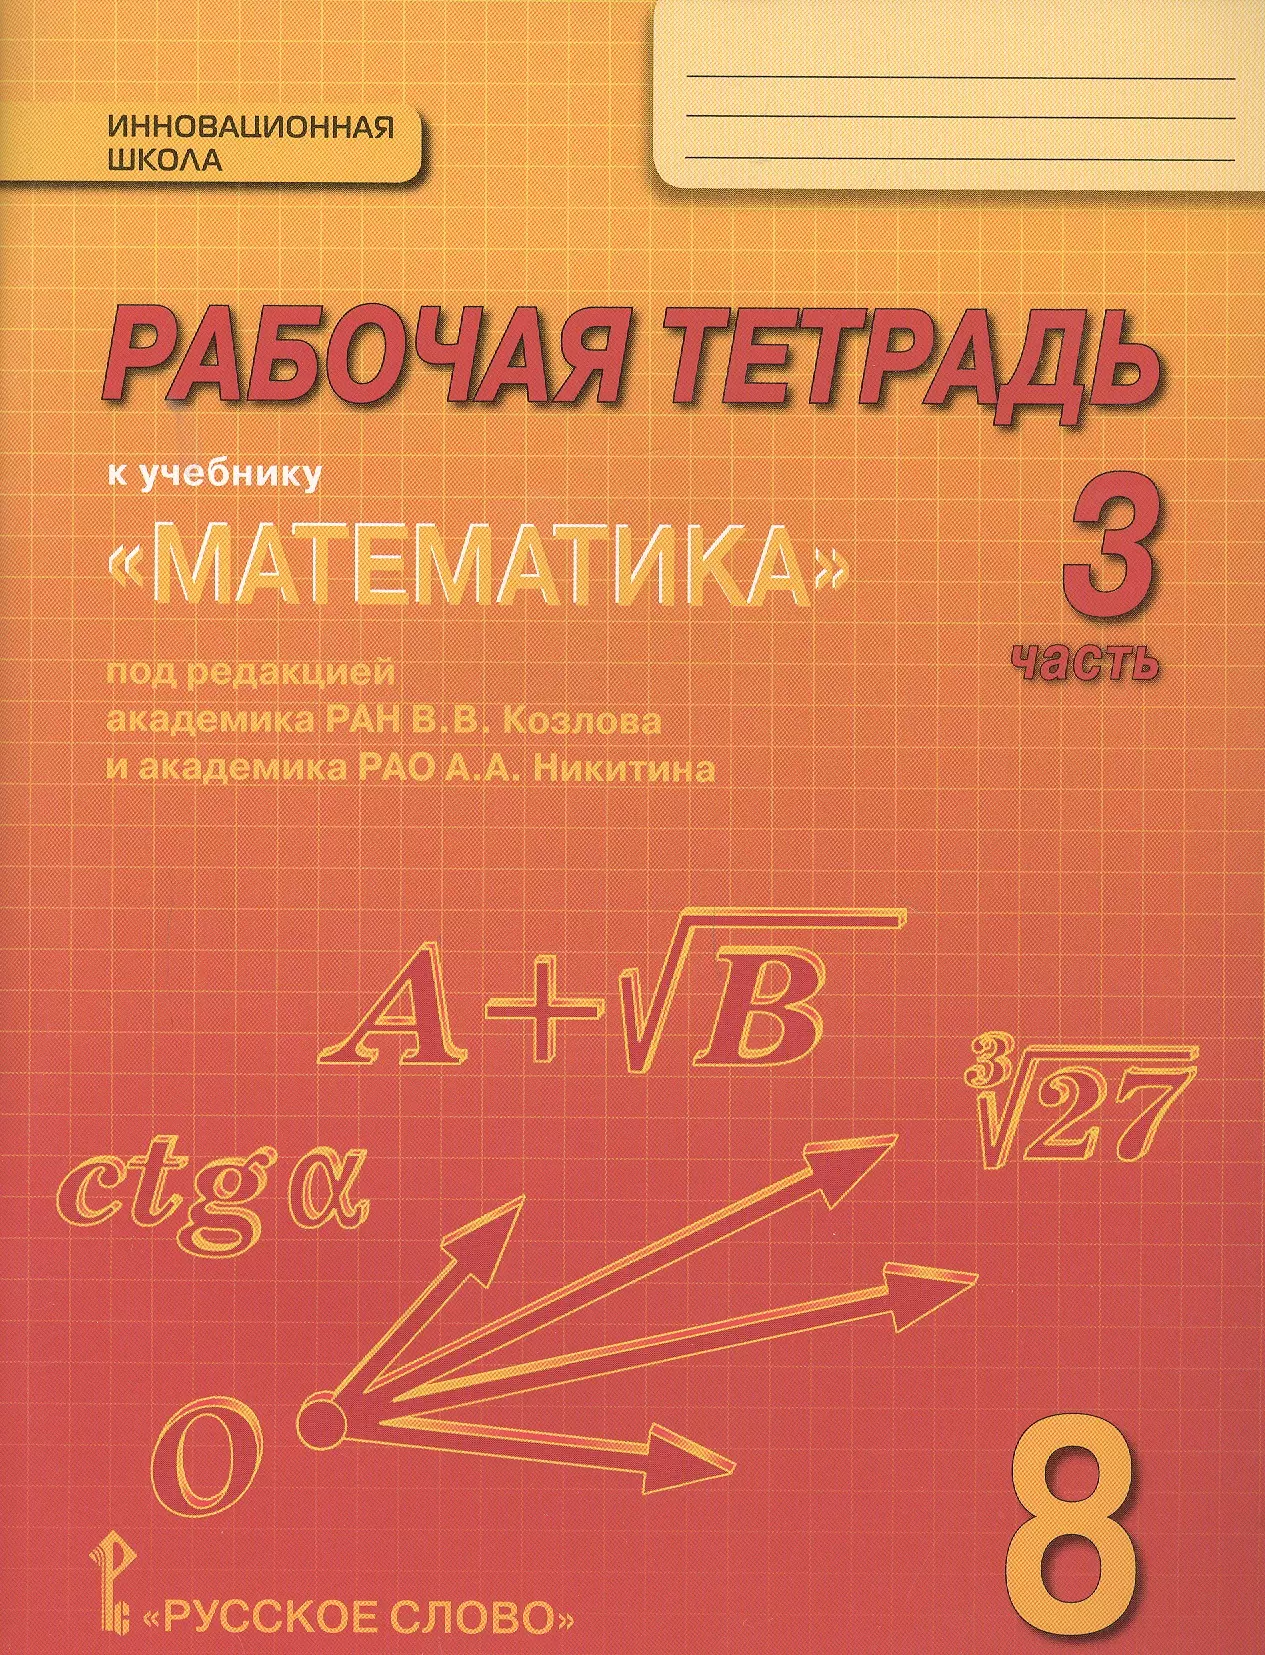 Рабочая тетрадь к учебнику Математика: алгебра и геометрия для 8 класса общеобразовательных организаций. В 4 частях. Часть 3 рабочая тетрадь к учебнику математика алгебра и геометрия для 8 класса общеобразовательных организаций в 4 частях часть 3